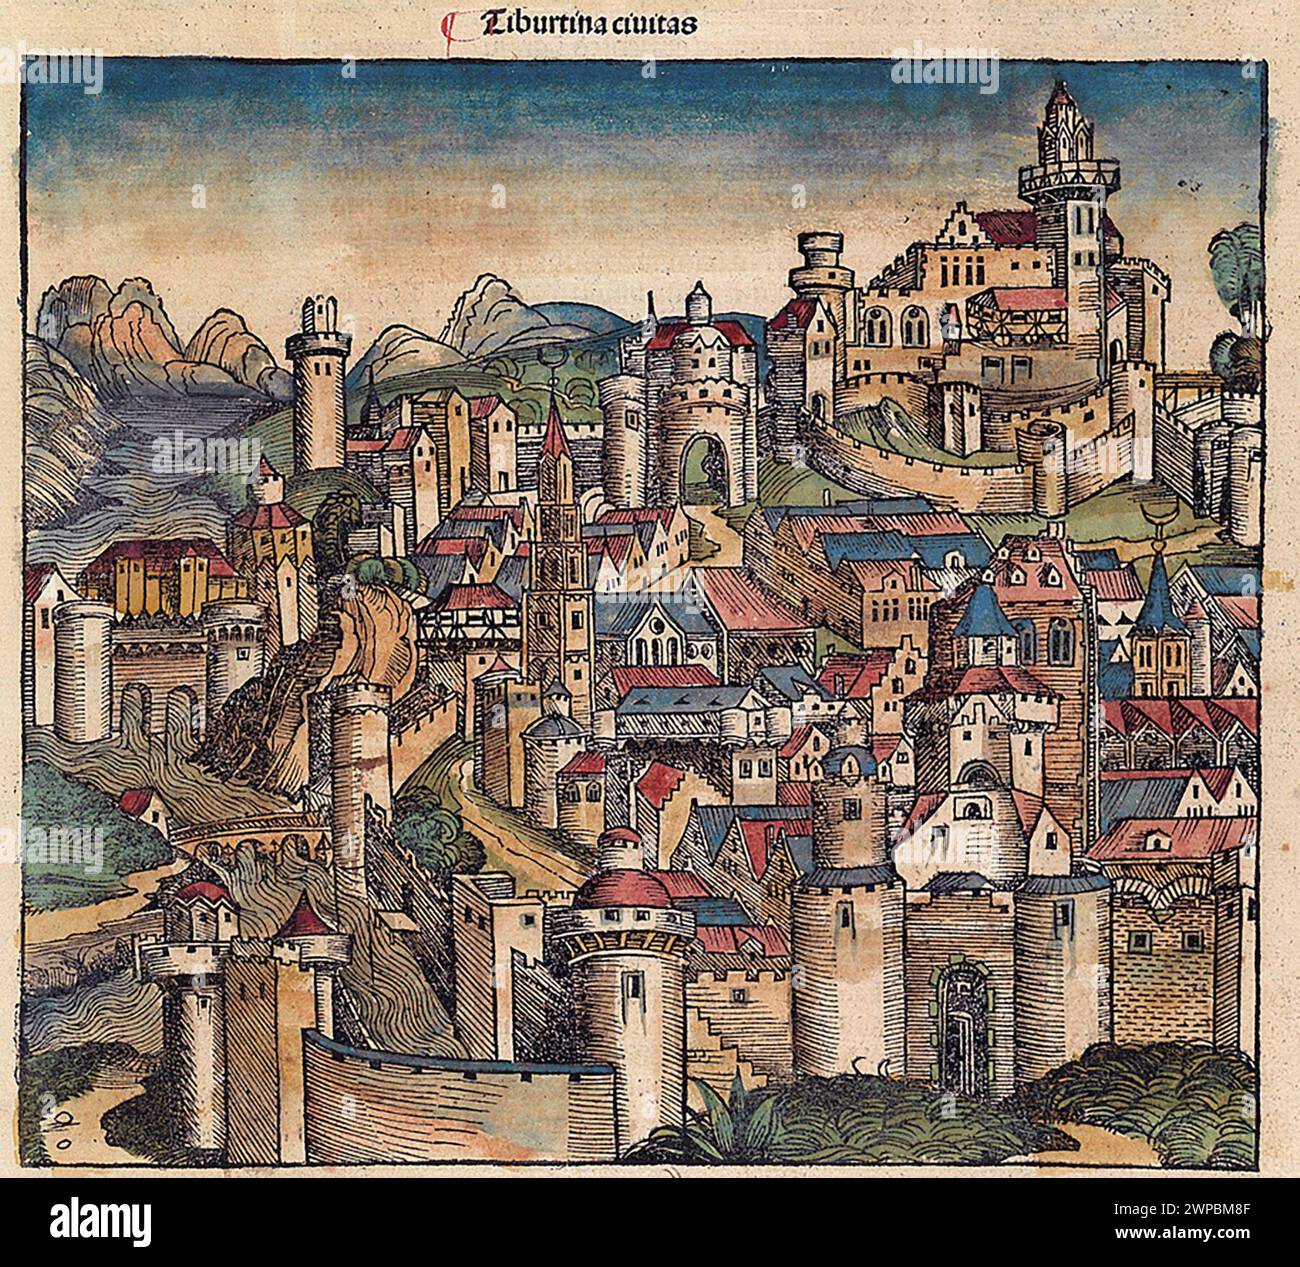 Ein schöner Holzschnitt aus dem Jahr 1493 der Stadt von. Diese Illustration stammt aus der Nürnberger Chronik, die eine Enzyklodpedie über Weltereignisse, Mythologie und christliche Geschichte ist. Dieses außergewöhnliche Werk war eines der frühesten Bücher, die jemals gedruckt wurden und das erste, das erfolgreich Text und Bilder integriert. Stockfoto